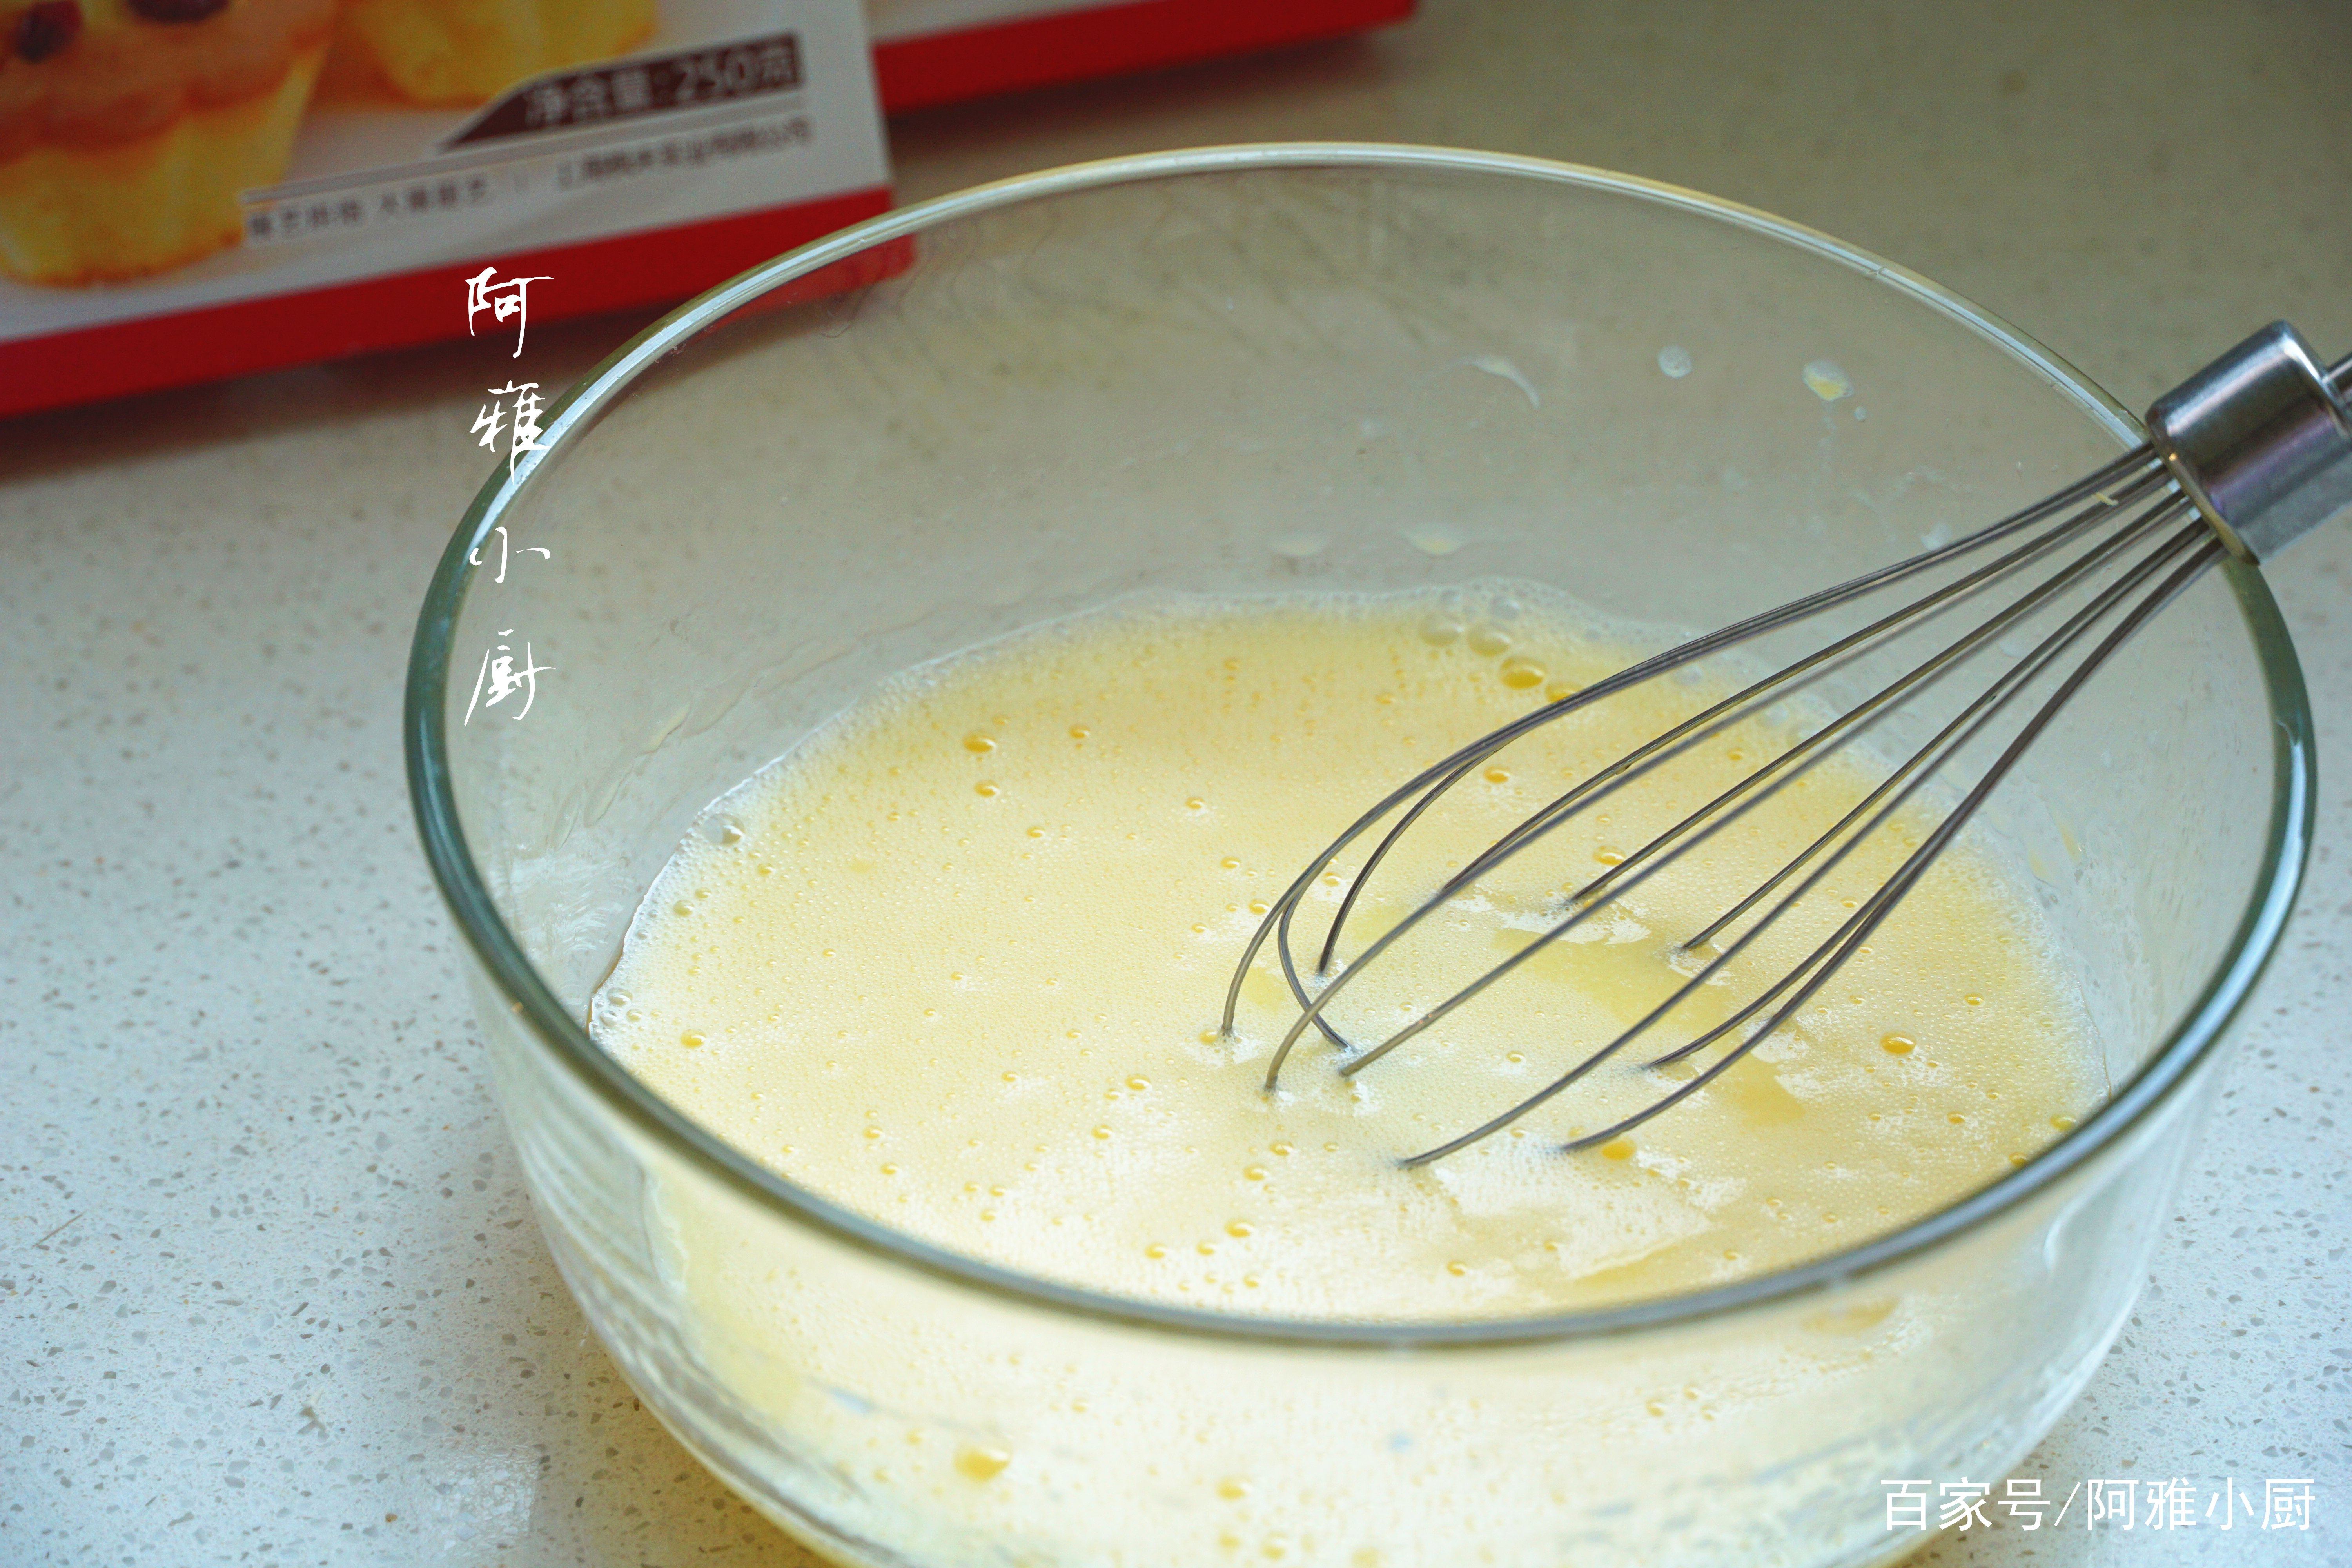 把玛芬蛋糕预拌粉250g加入到鸡蛋牛奶糊中,搅拌均匀,这一步不需要打发